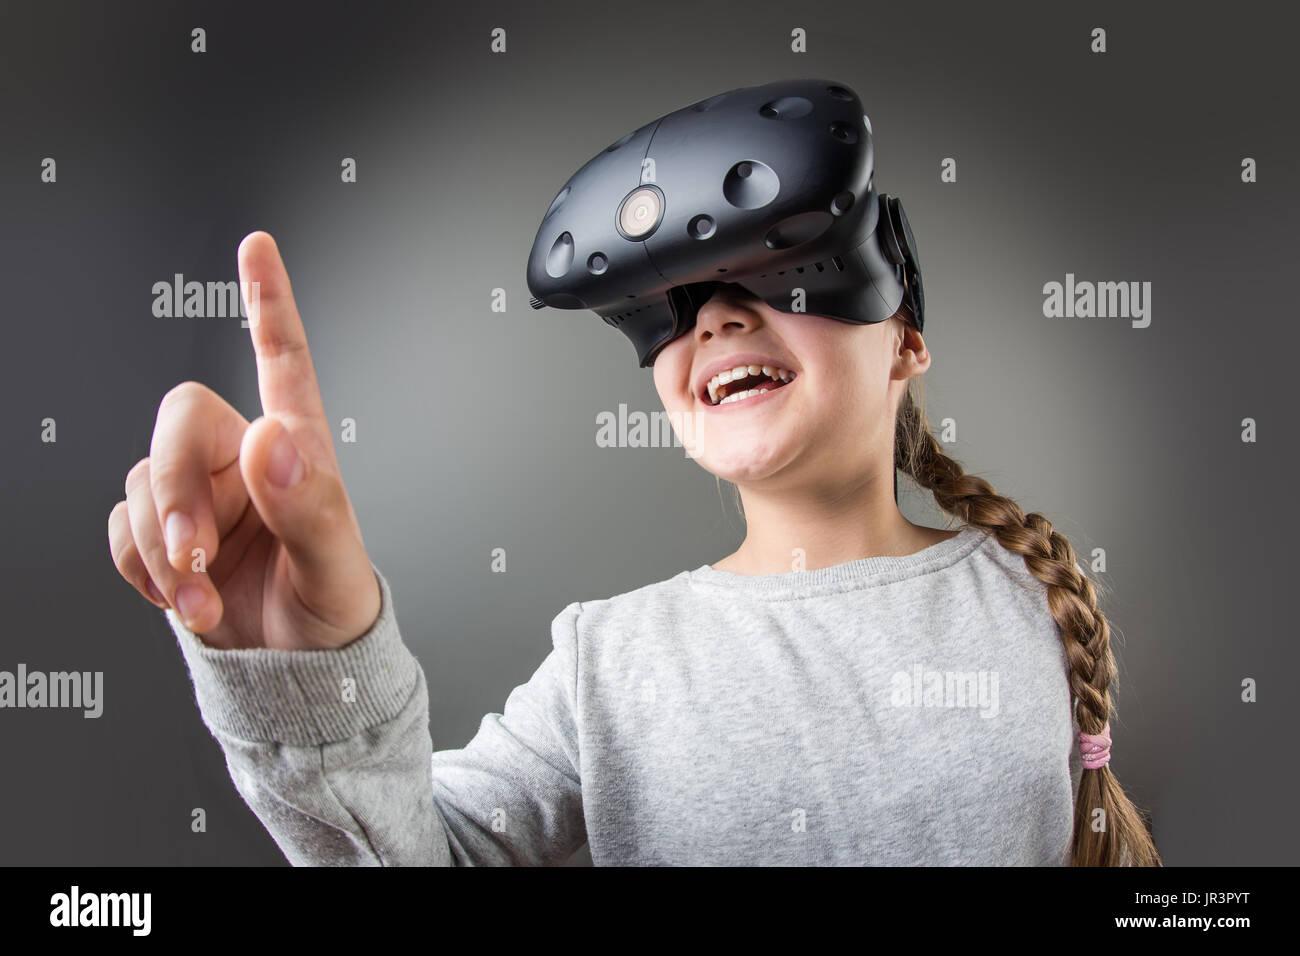 Surpris petite fille à l'aide d'un casque de réalité virtuelle Banque D'Images